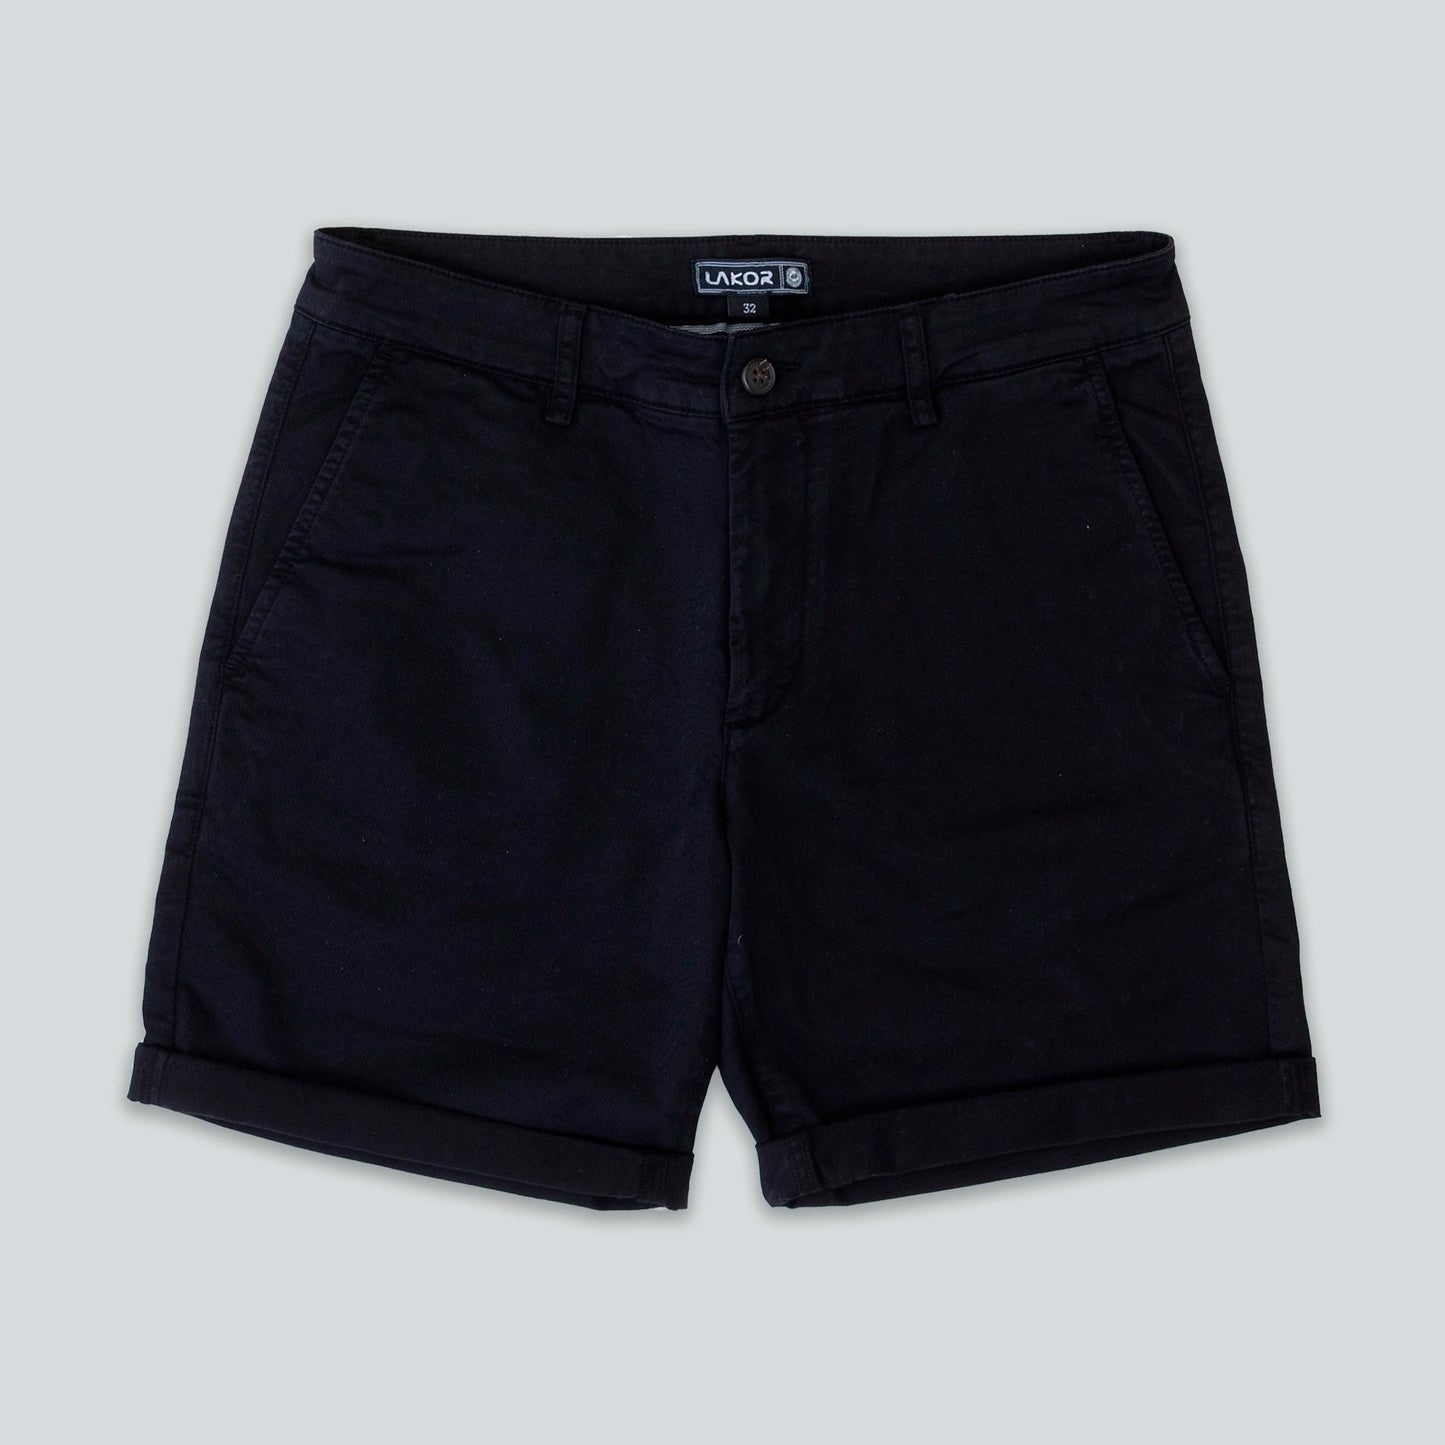 Lakor - Chino Shorts (Black)